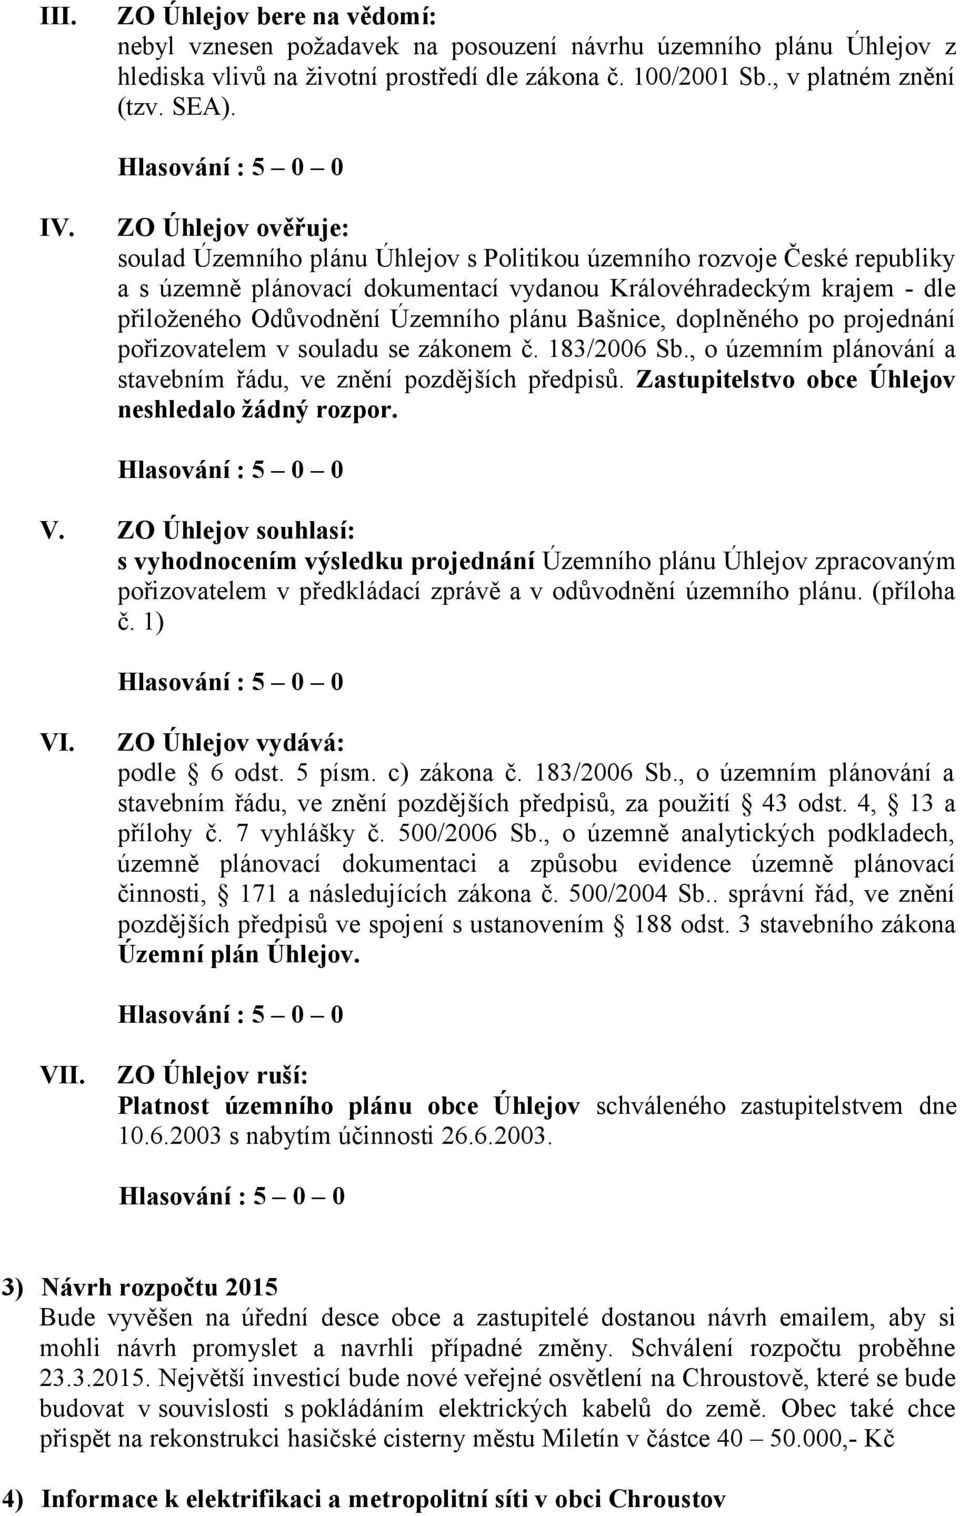 plánu Bašnice, doplněného po projednání pořizovatelem v souladu se zákonem č. 183/2006 Sb., o územním plánování a stavebním řádu, ve znění pozdějších předpisů.